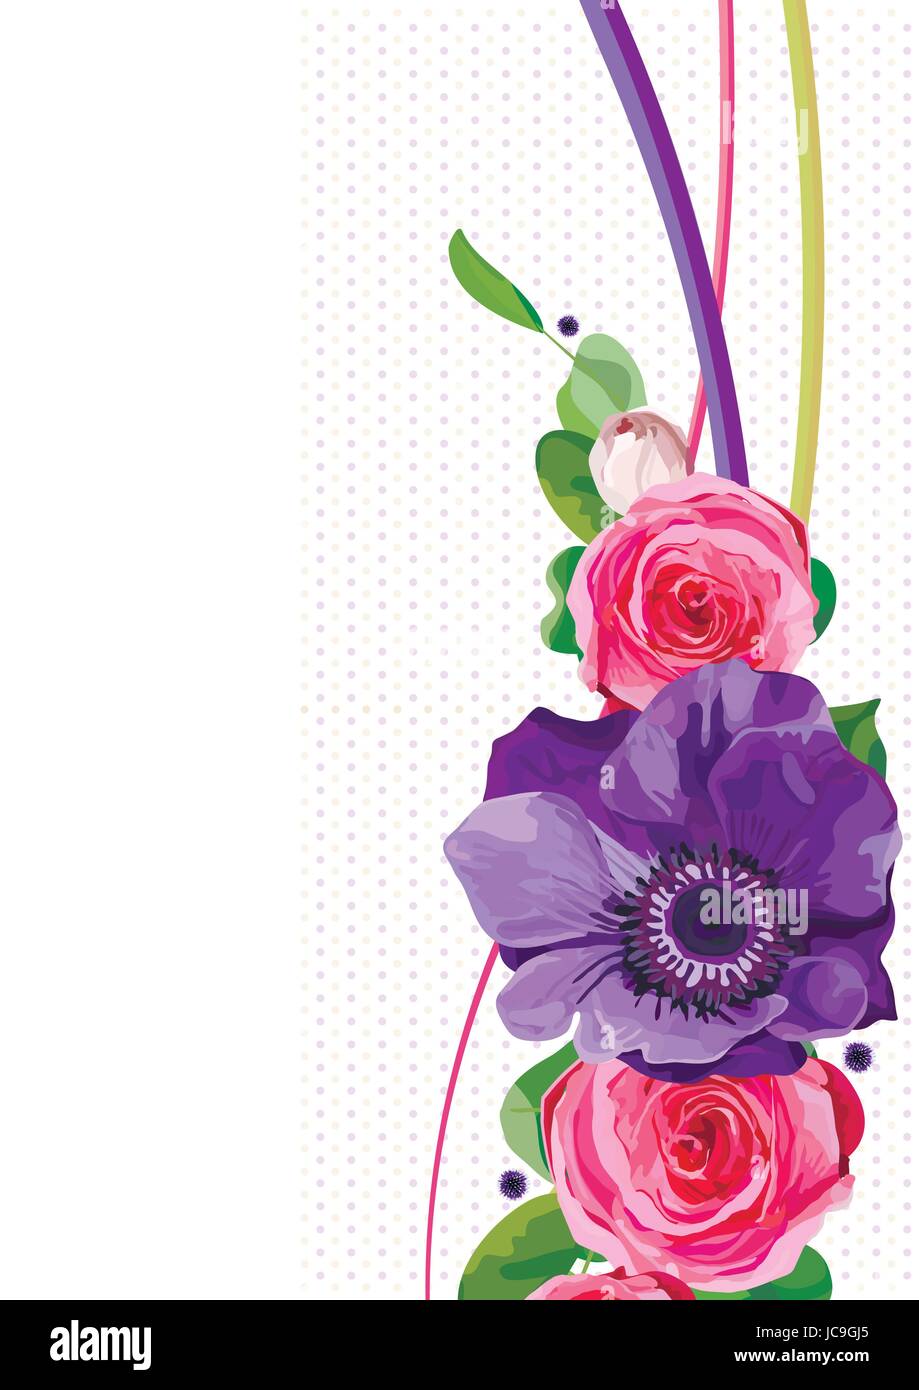 Blume helle Blume heißen rosa Rose Anemone Distel lässt schöne schönen Frühling Sommer Bouquet Vektor-Illustration. Ansicht von oben senkrecht elegante ve Stock Vektor